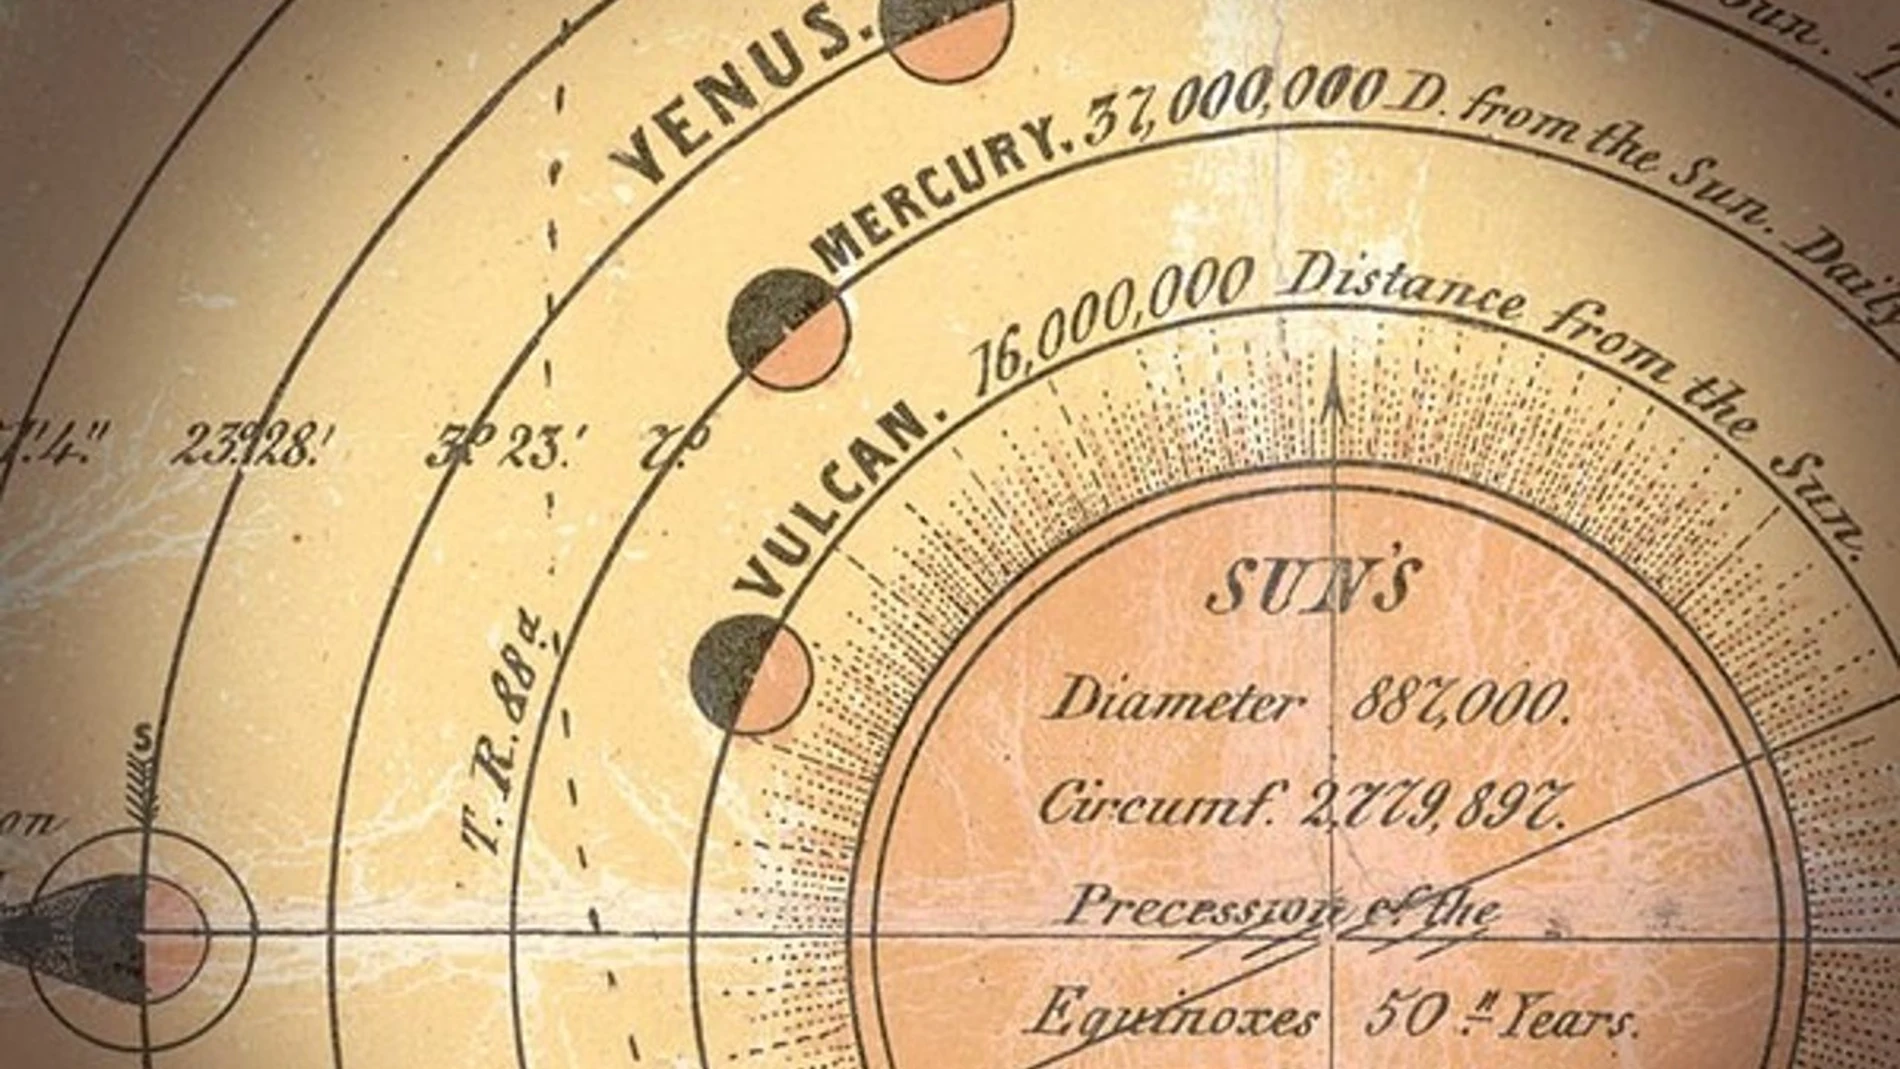 Litografía del año 1846 mostrando los planetas del Sistema Solar y entre ellos, Vulcano